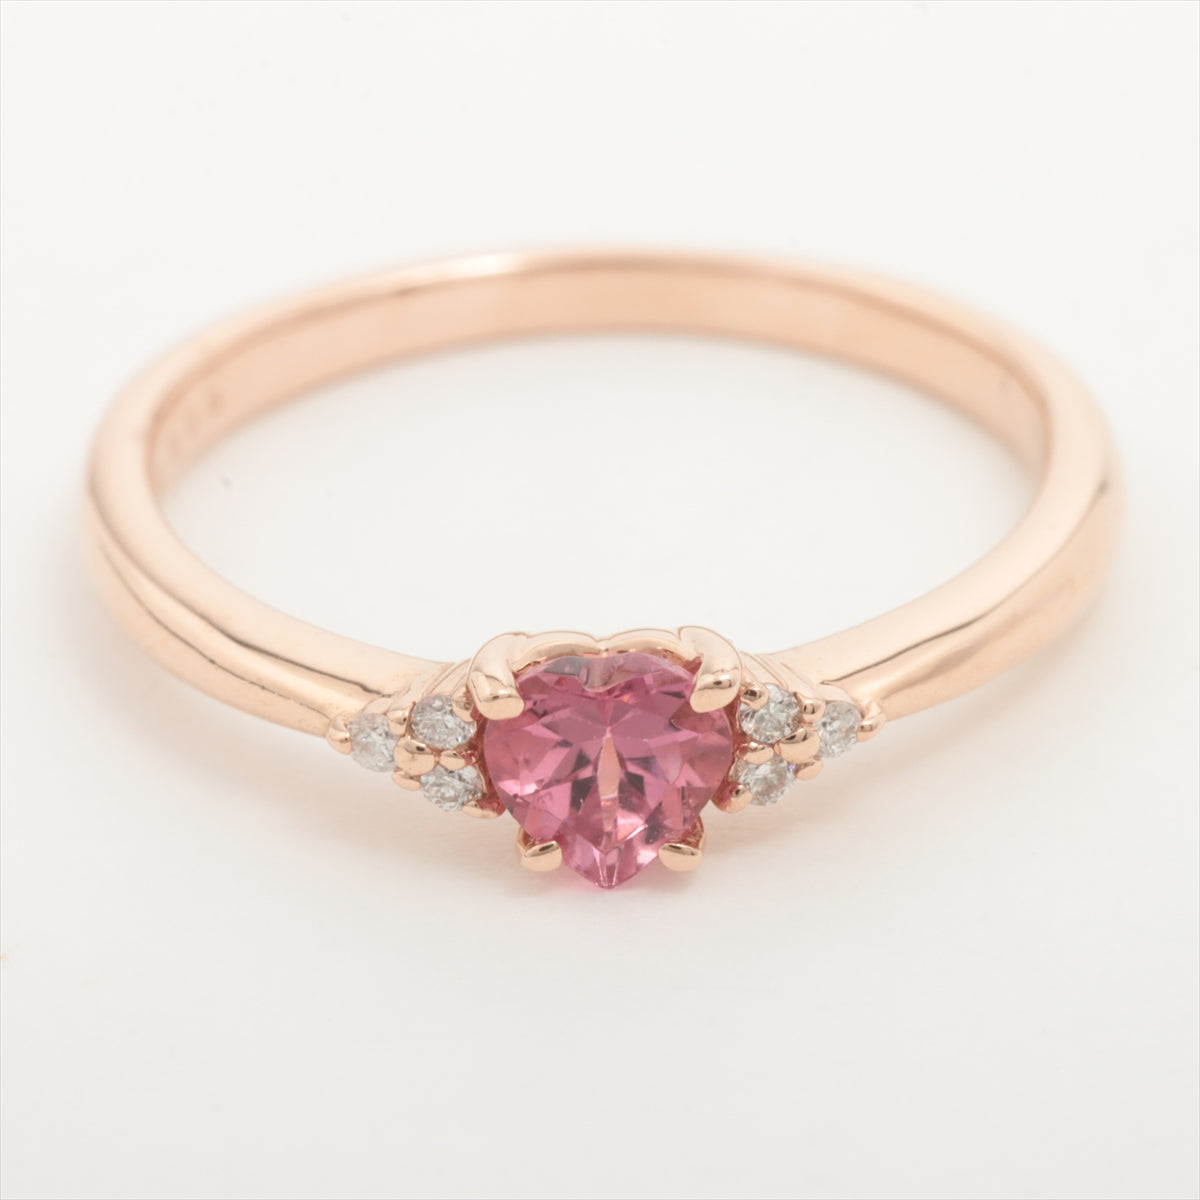 スタージュエリー ピンク色石 ダイヤモンド リング 0.01ct 5.5号 K18WG(18金 ホワイトゴールド)